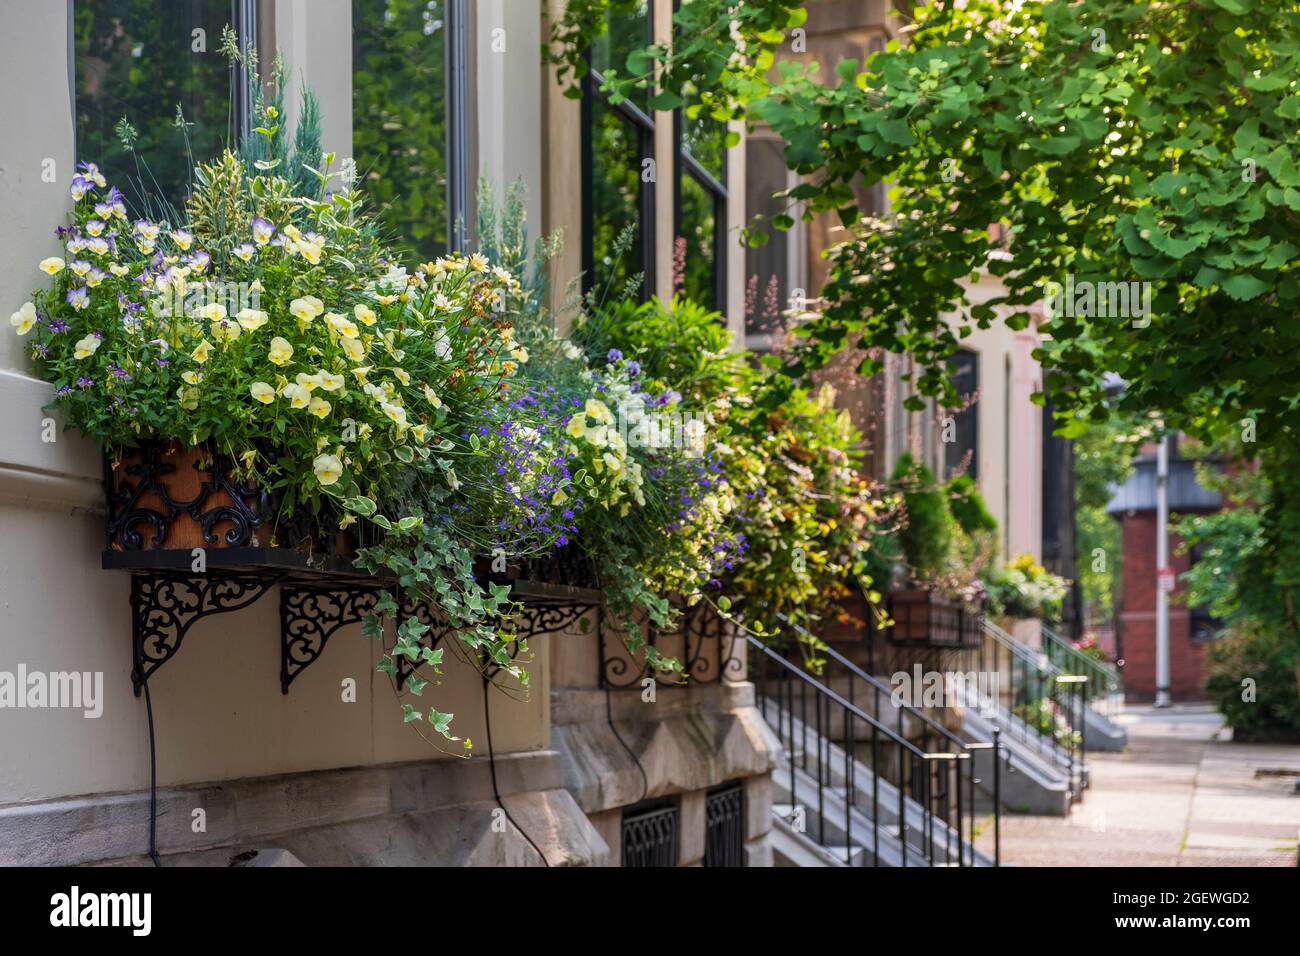 Cajas de ventanas en casas en verano, Rittenhouse Square Neighborhood, Philadelphia, Pennylvania, USA Foto de stock